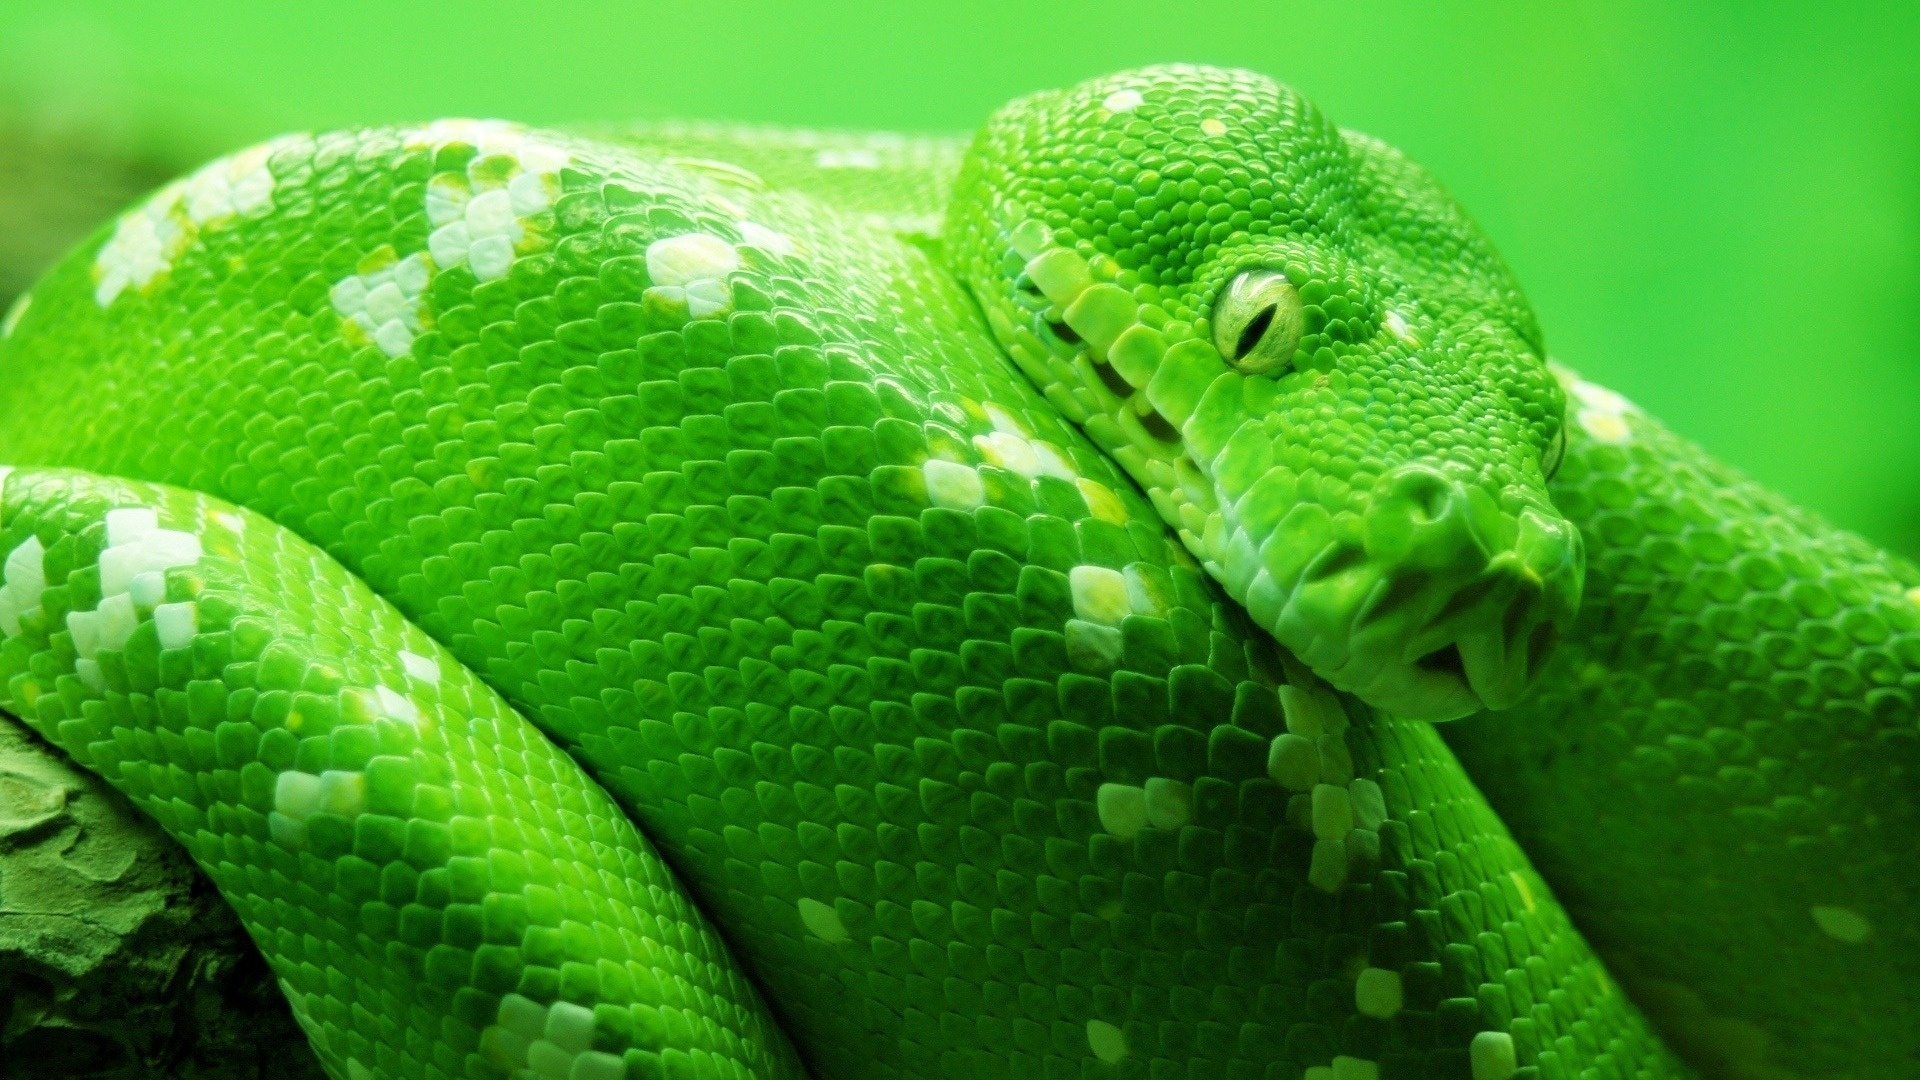 schlangentapete,reptil,grün,glatte grünschlange,schlange,schlange